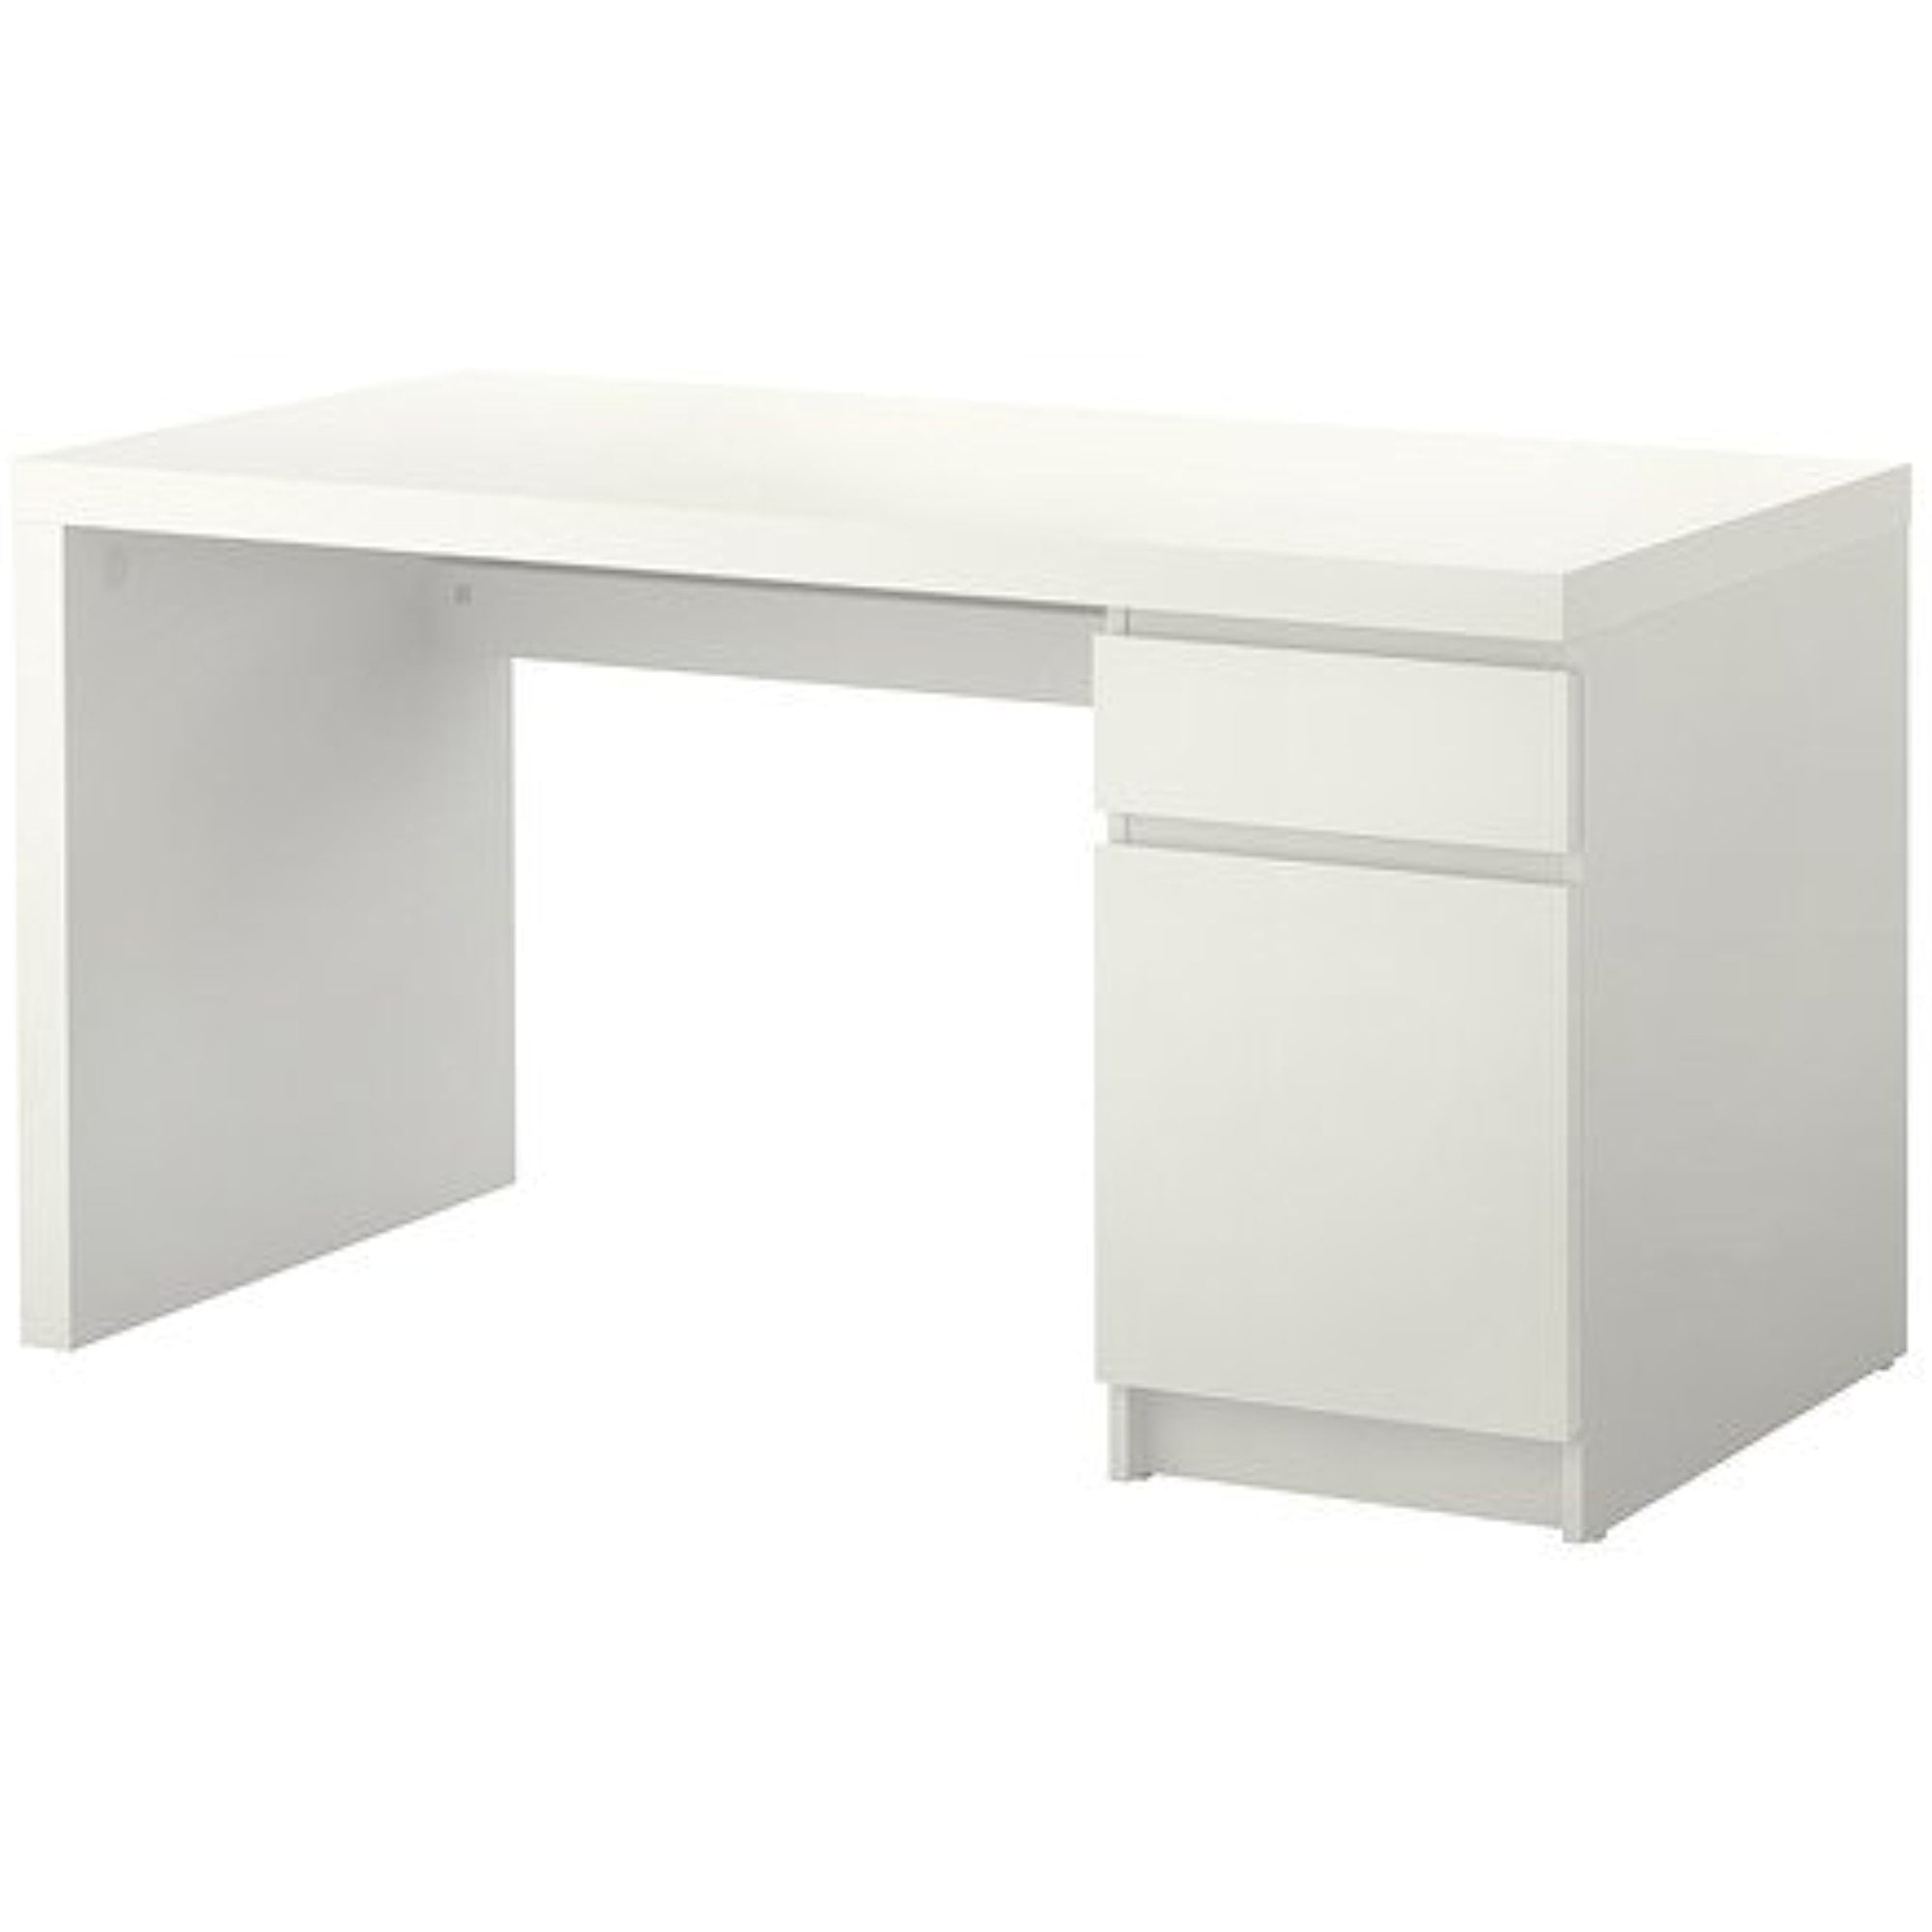 DIY Ikea Desk Setup White for Streamer